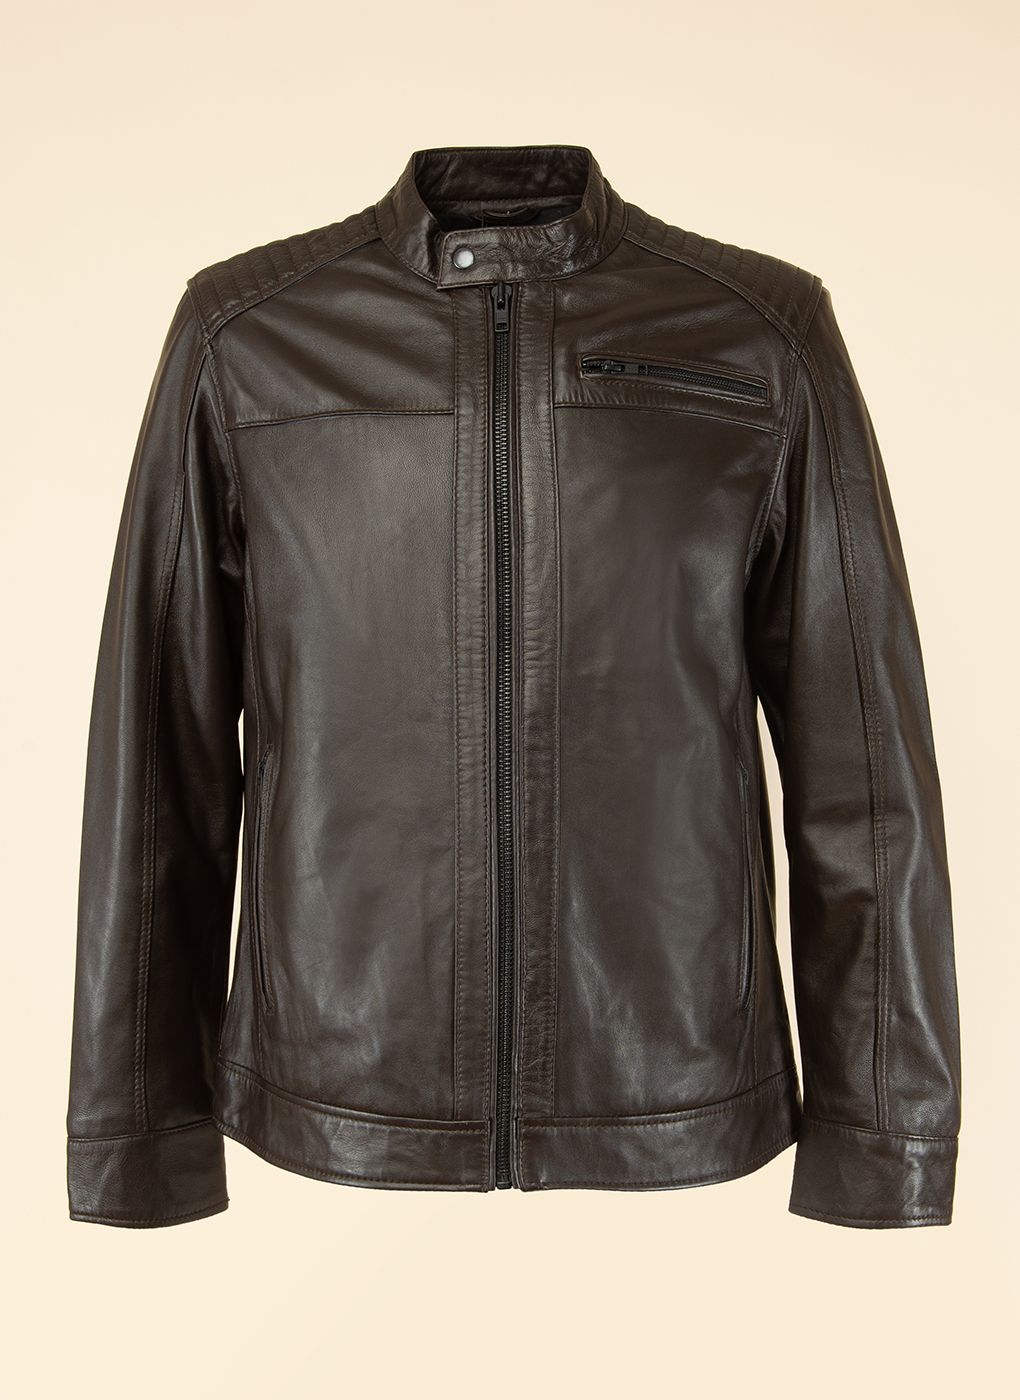 Кожаная куртка мужская Каляев 1597129 коричневая 60 RU